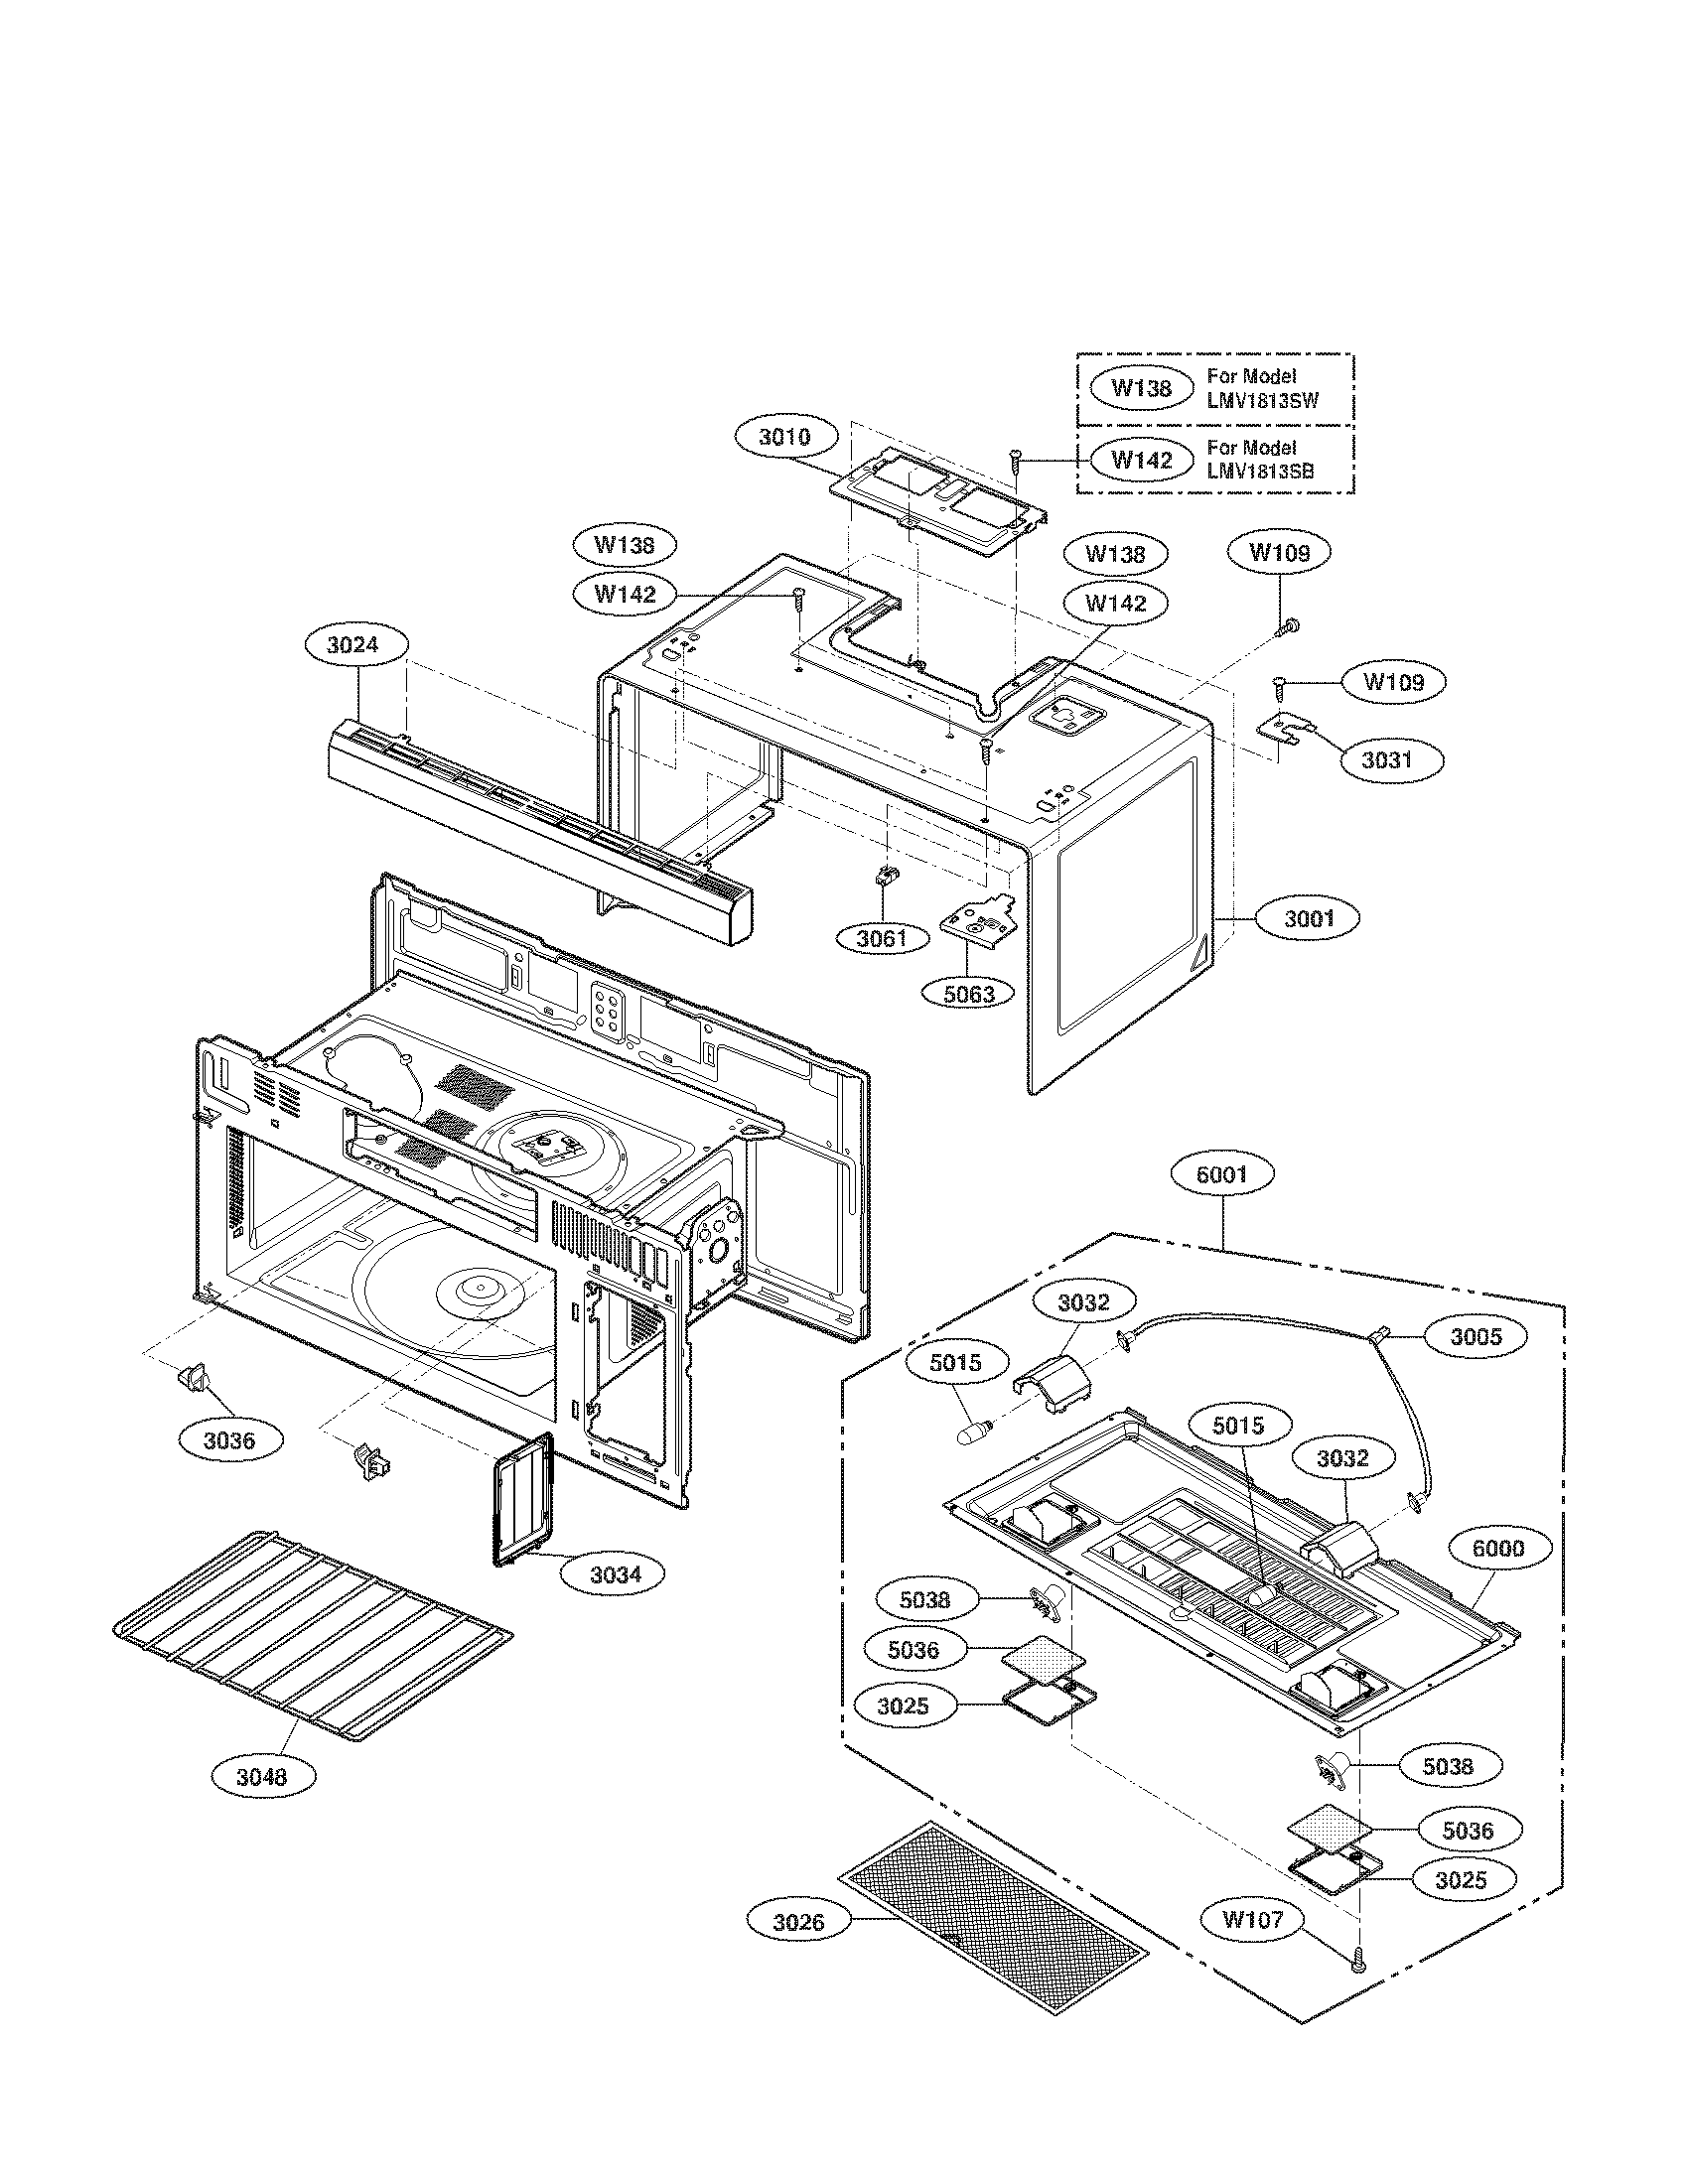 Oven Cavity Parts Diagram  U0026 Parts List For Model Lmv1813sb